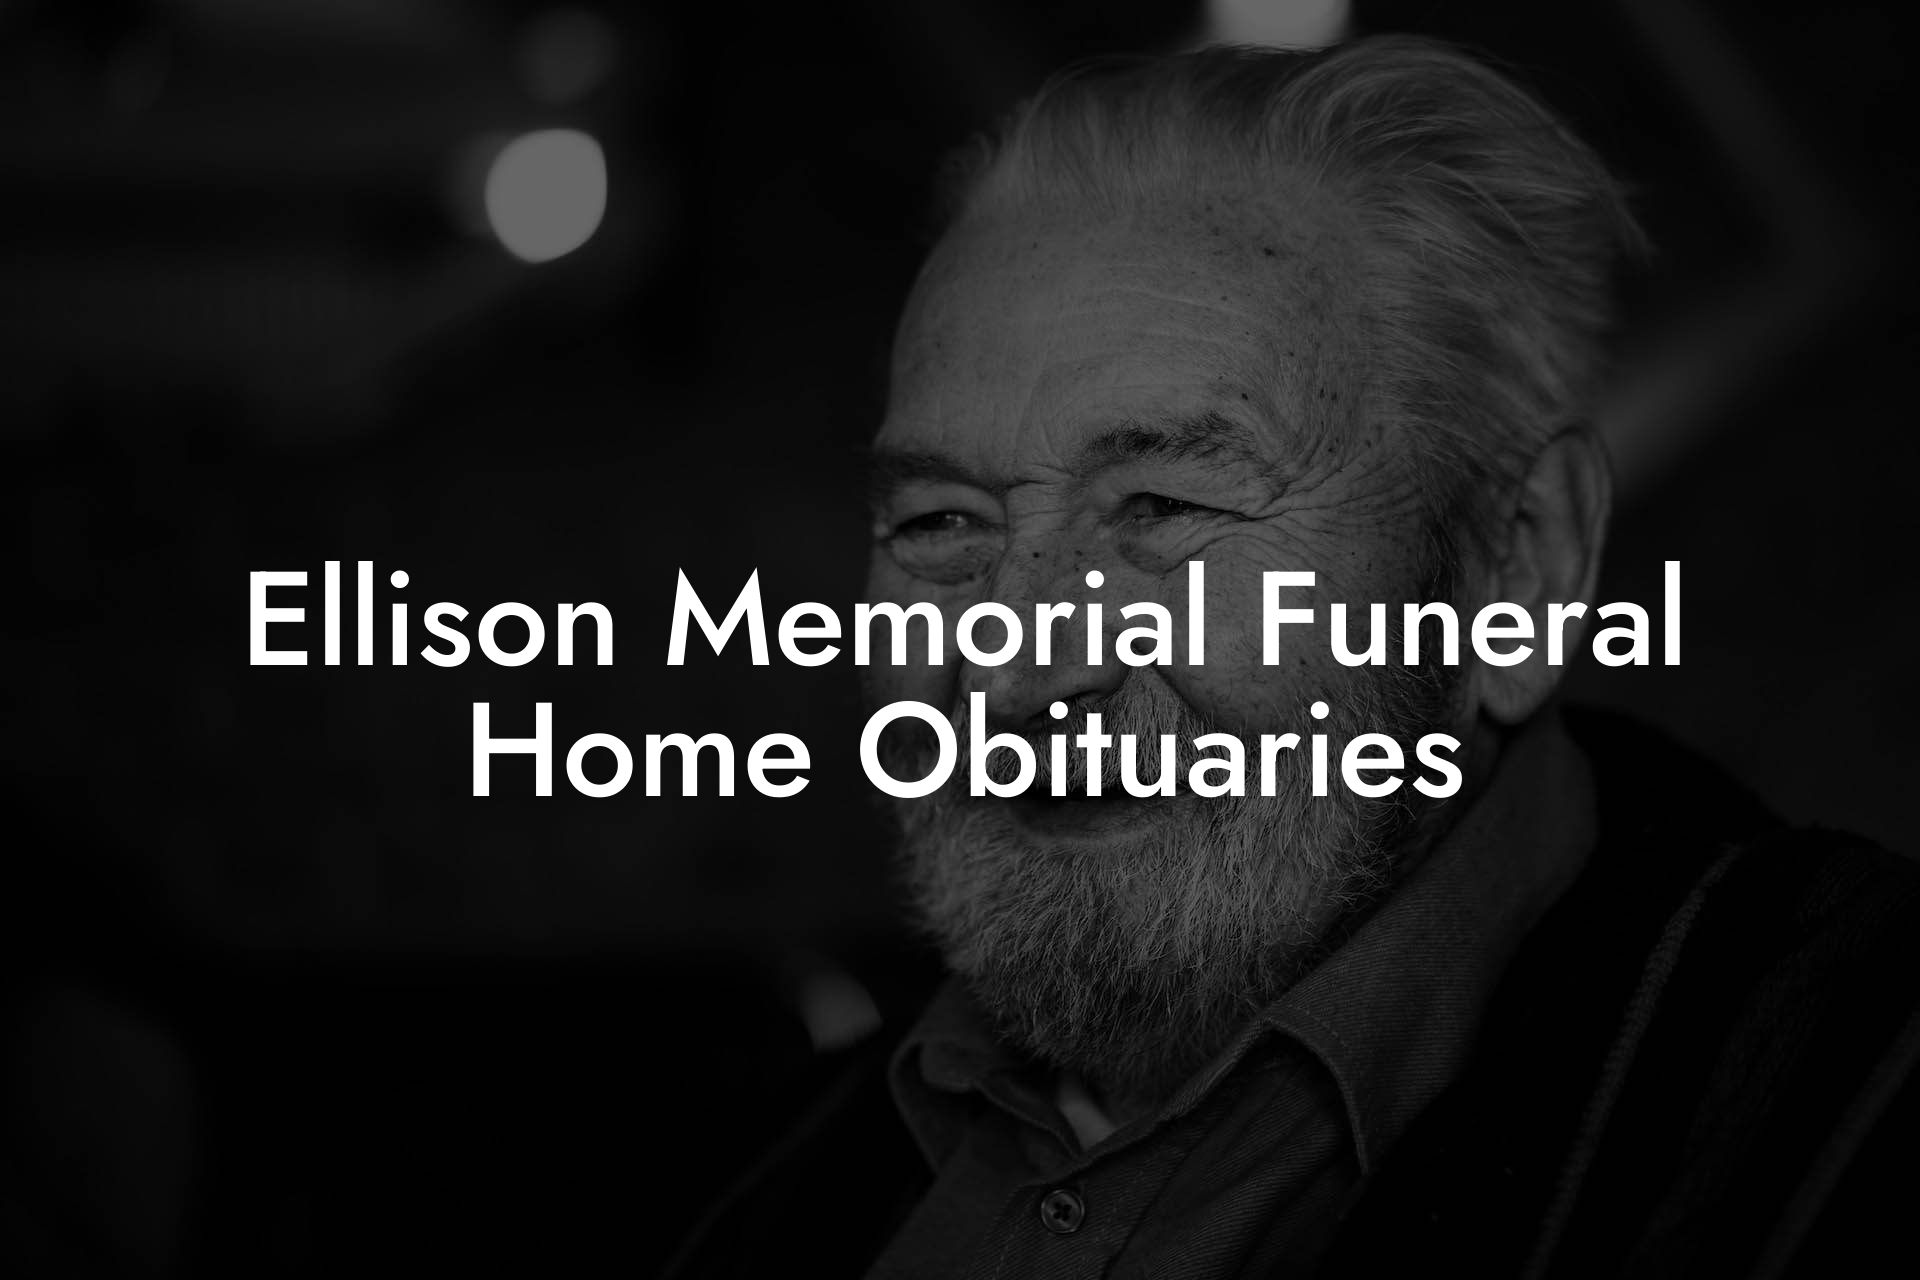 Ellison Memorial Funeral Home Obituaries